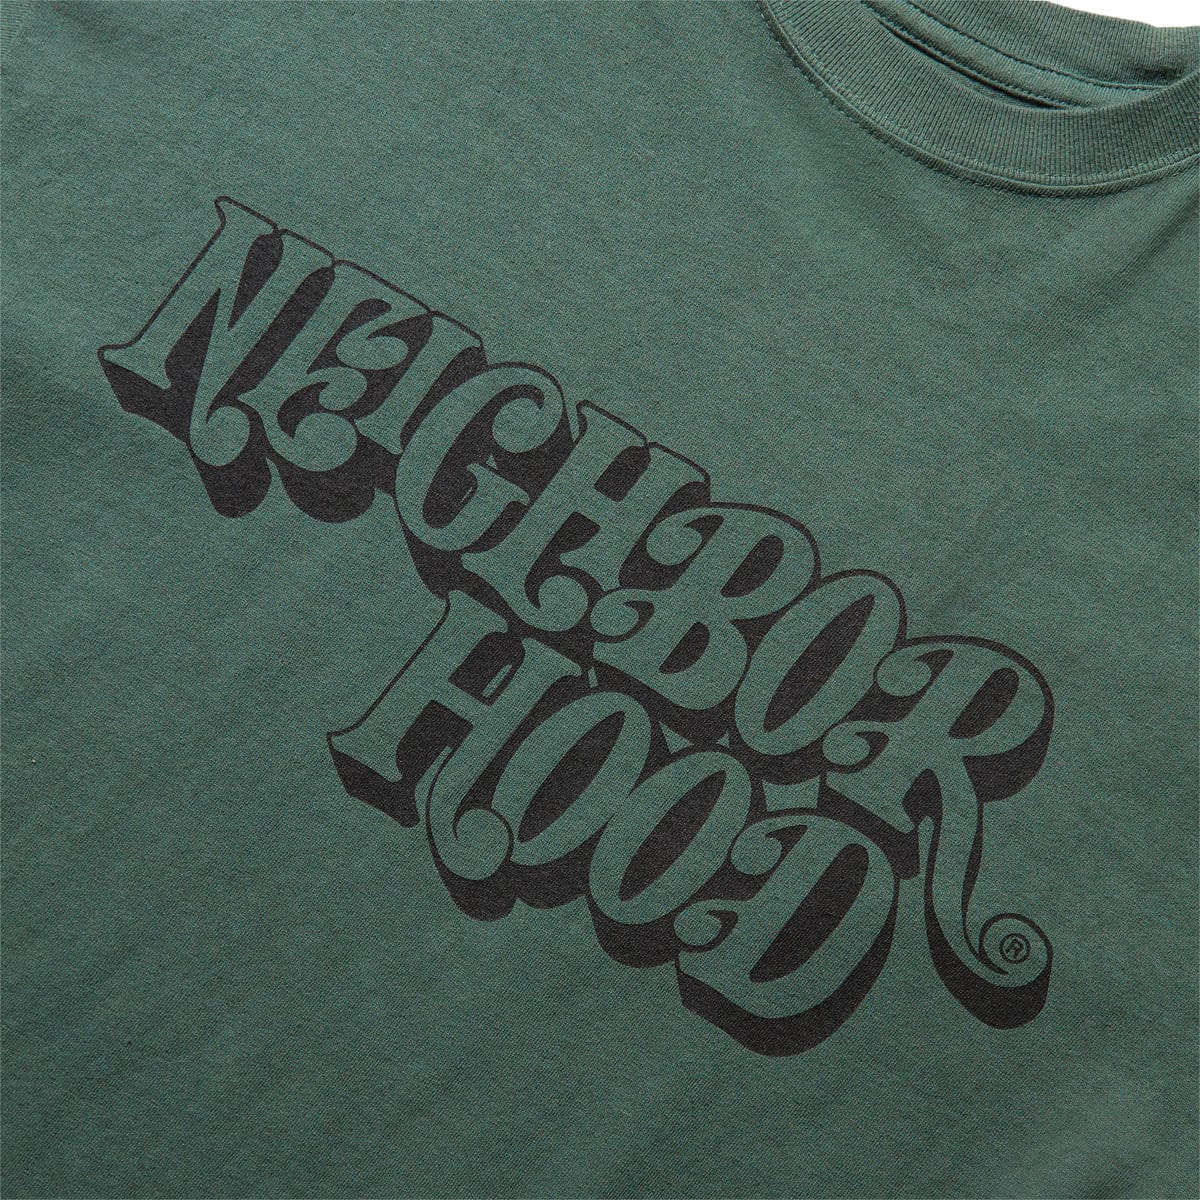 Neighborhood T-Shirts SULFUR DYE CREW SS